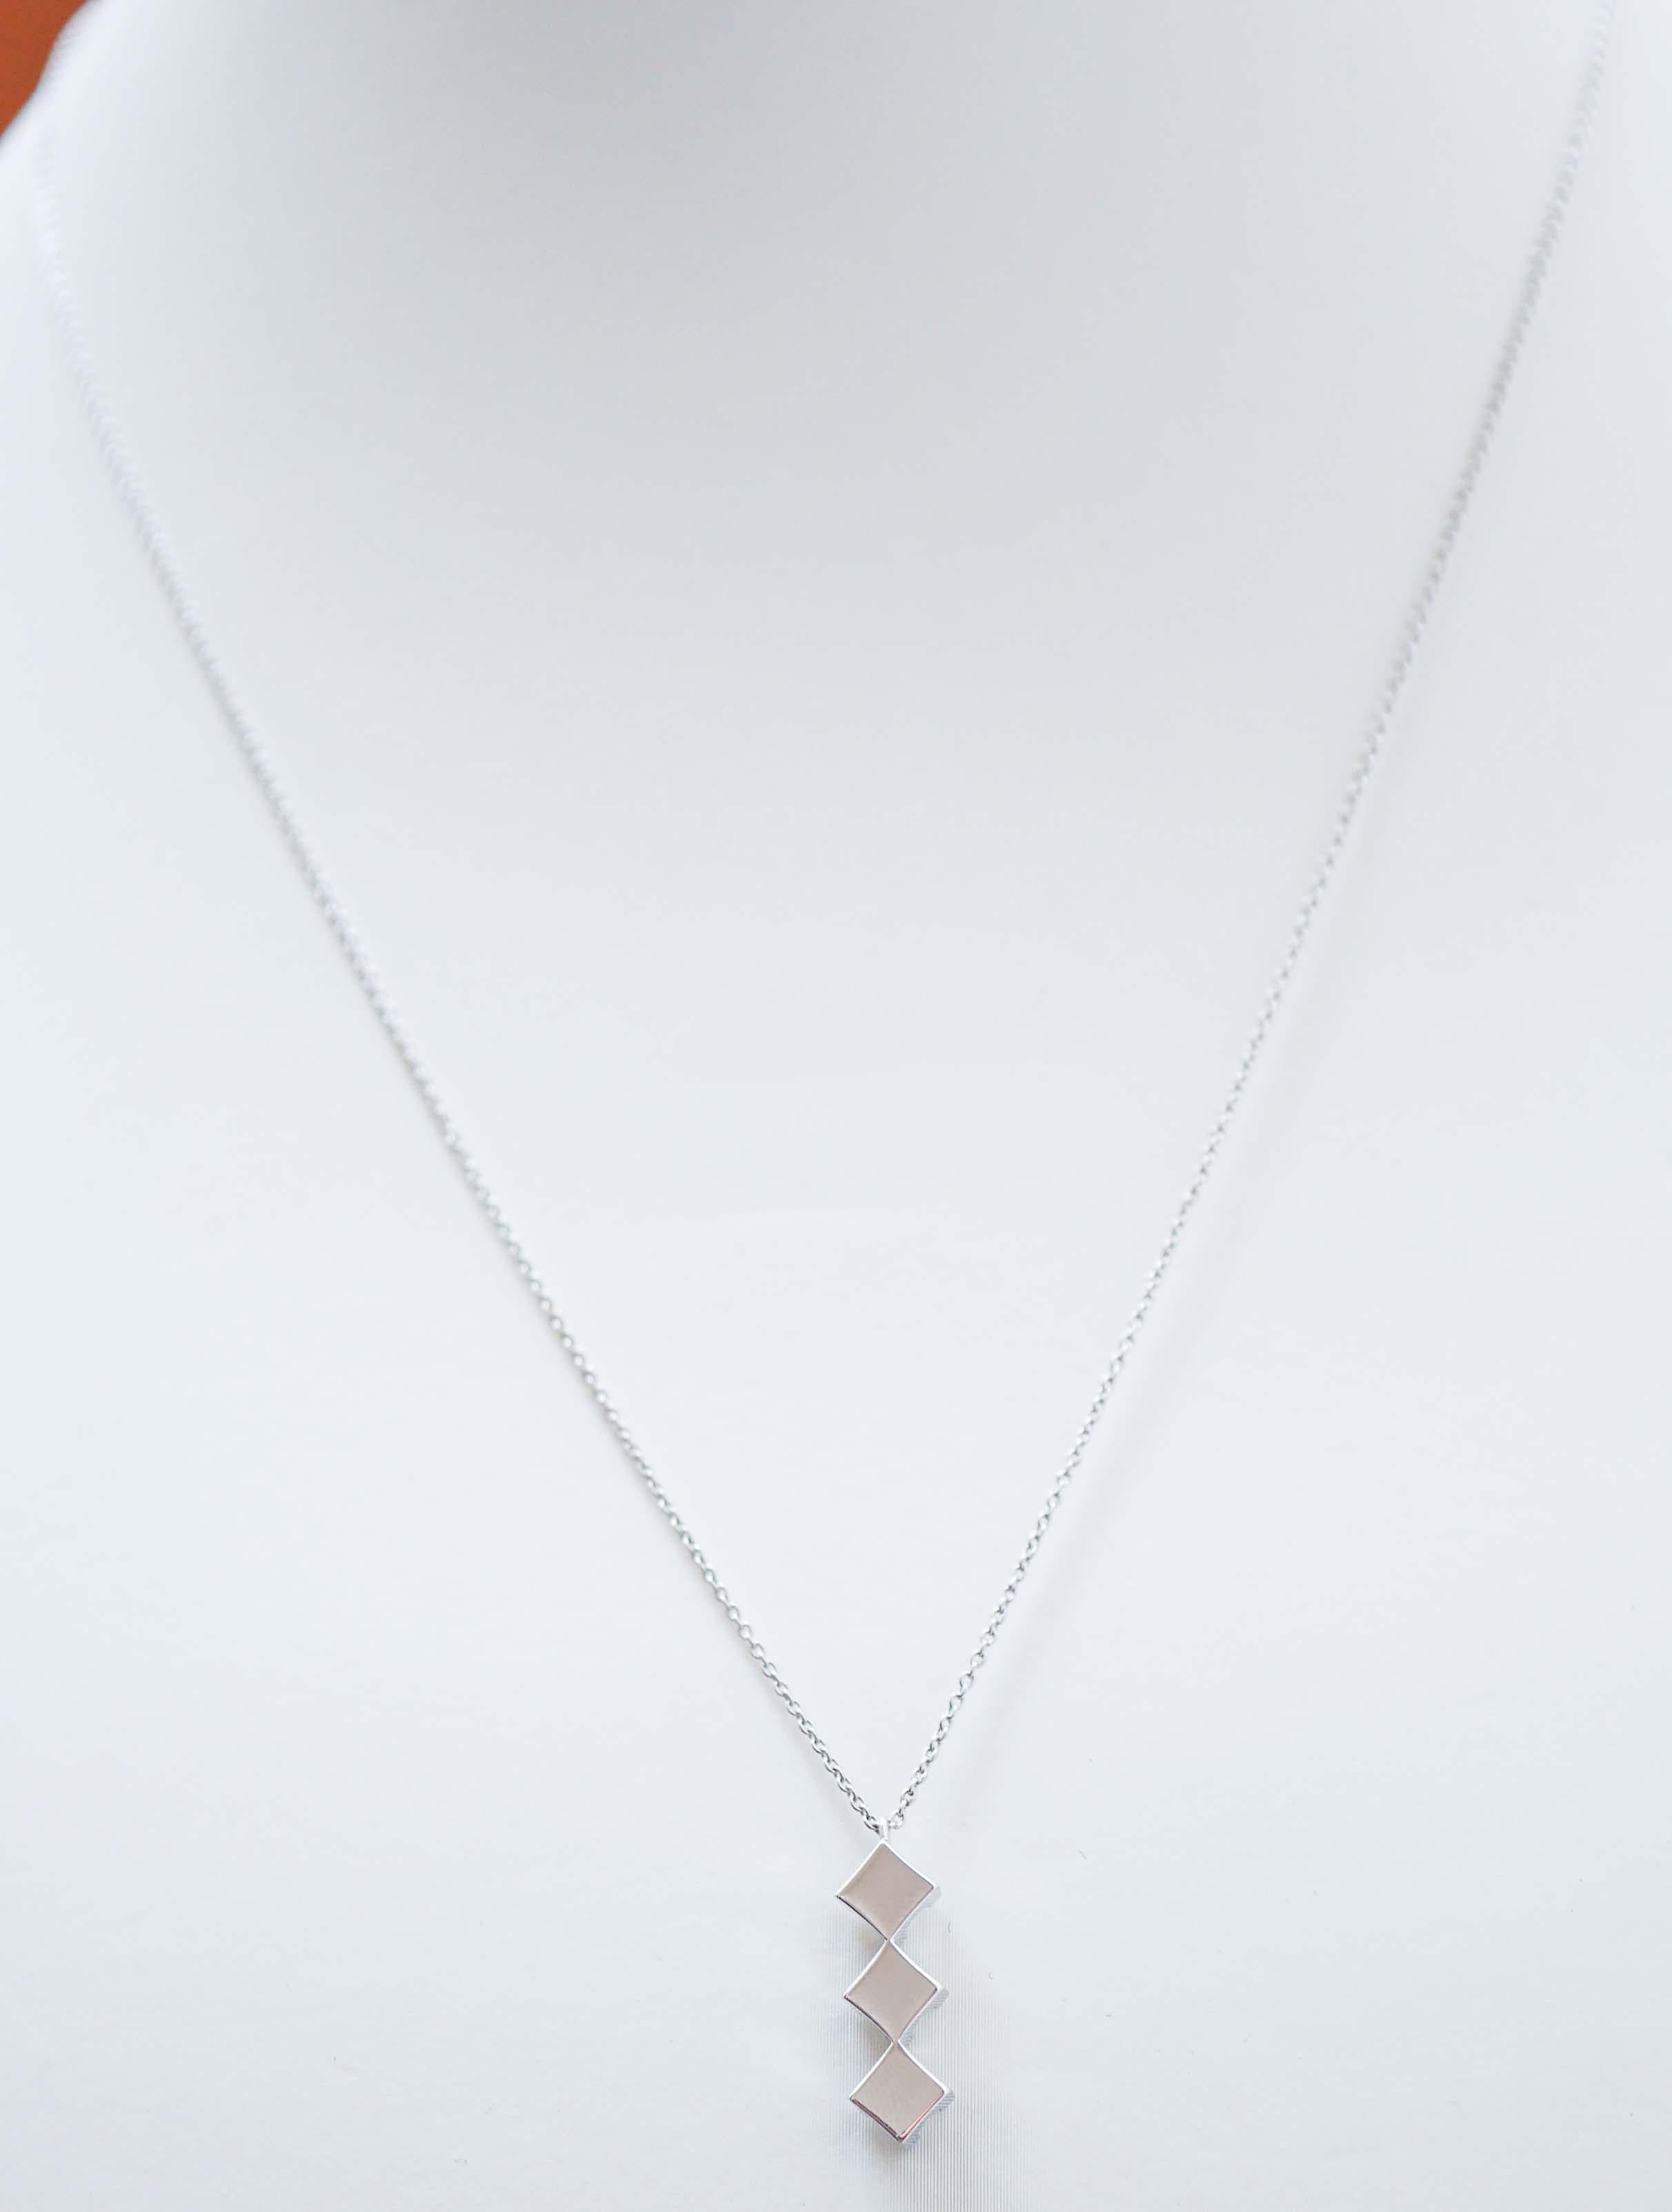 Brilliant Cut 0.60 Carats Diamonds, 18 Karat White Gold Pendant Necklace. For Sale